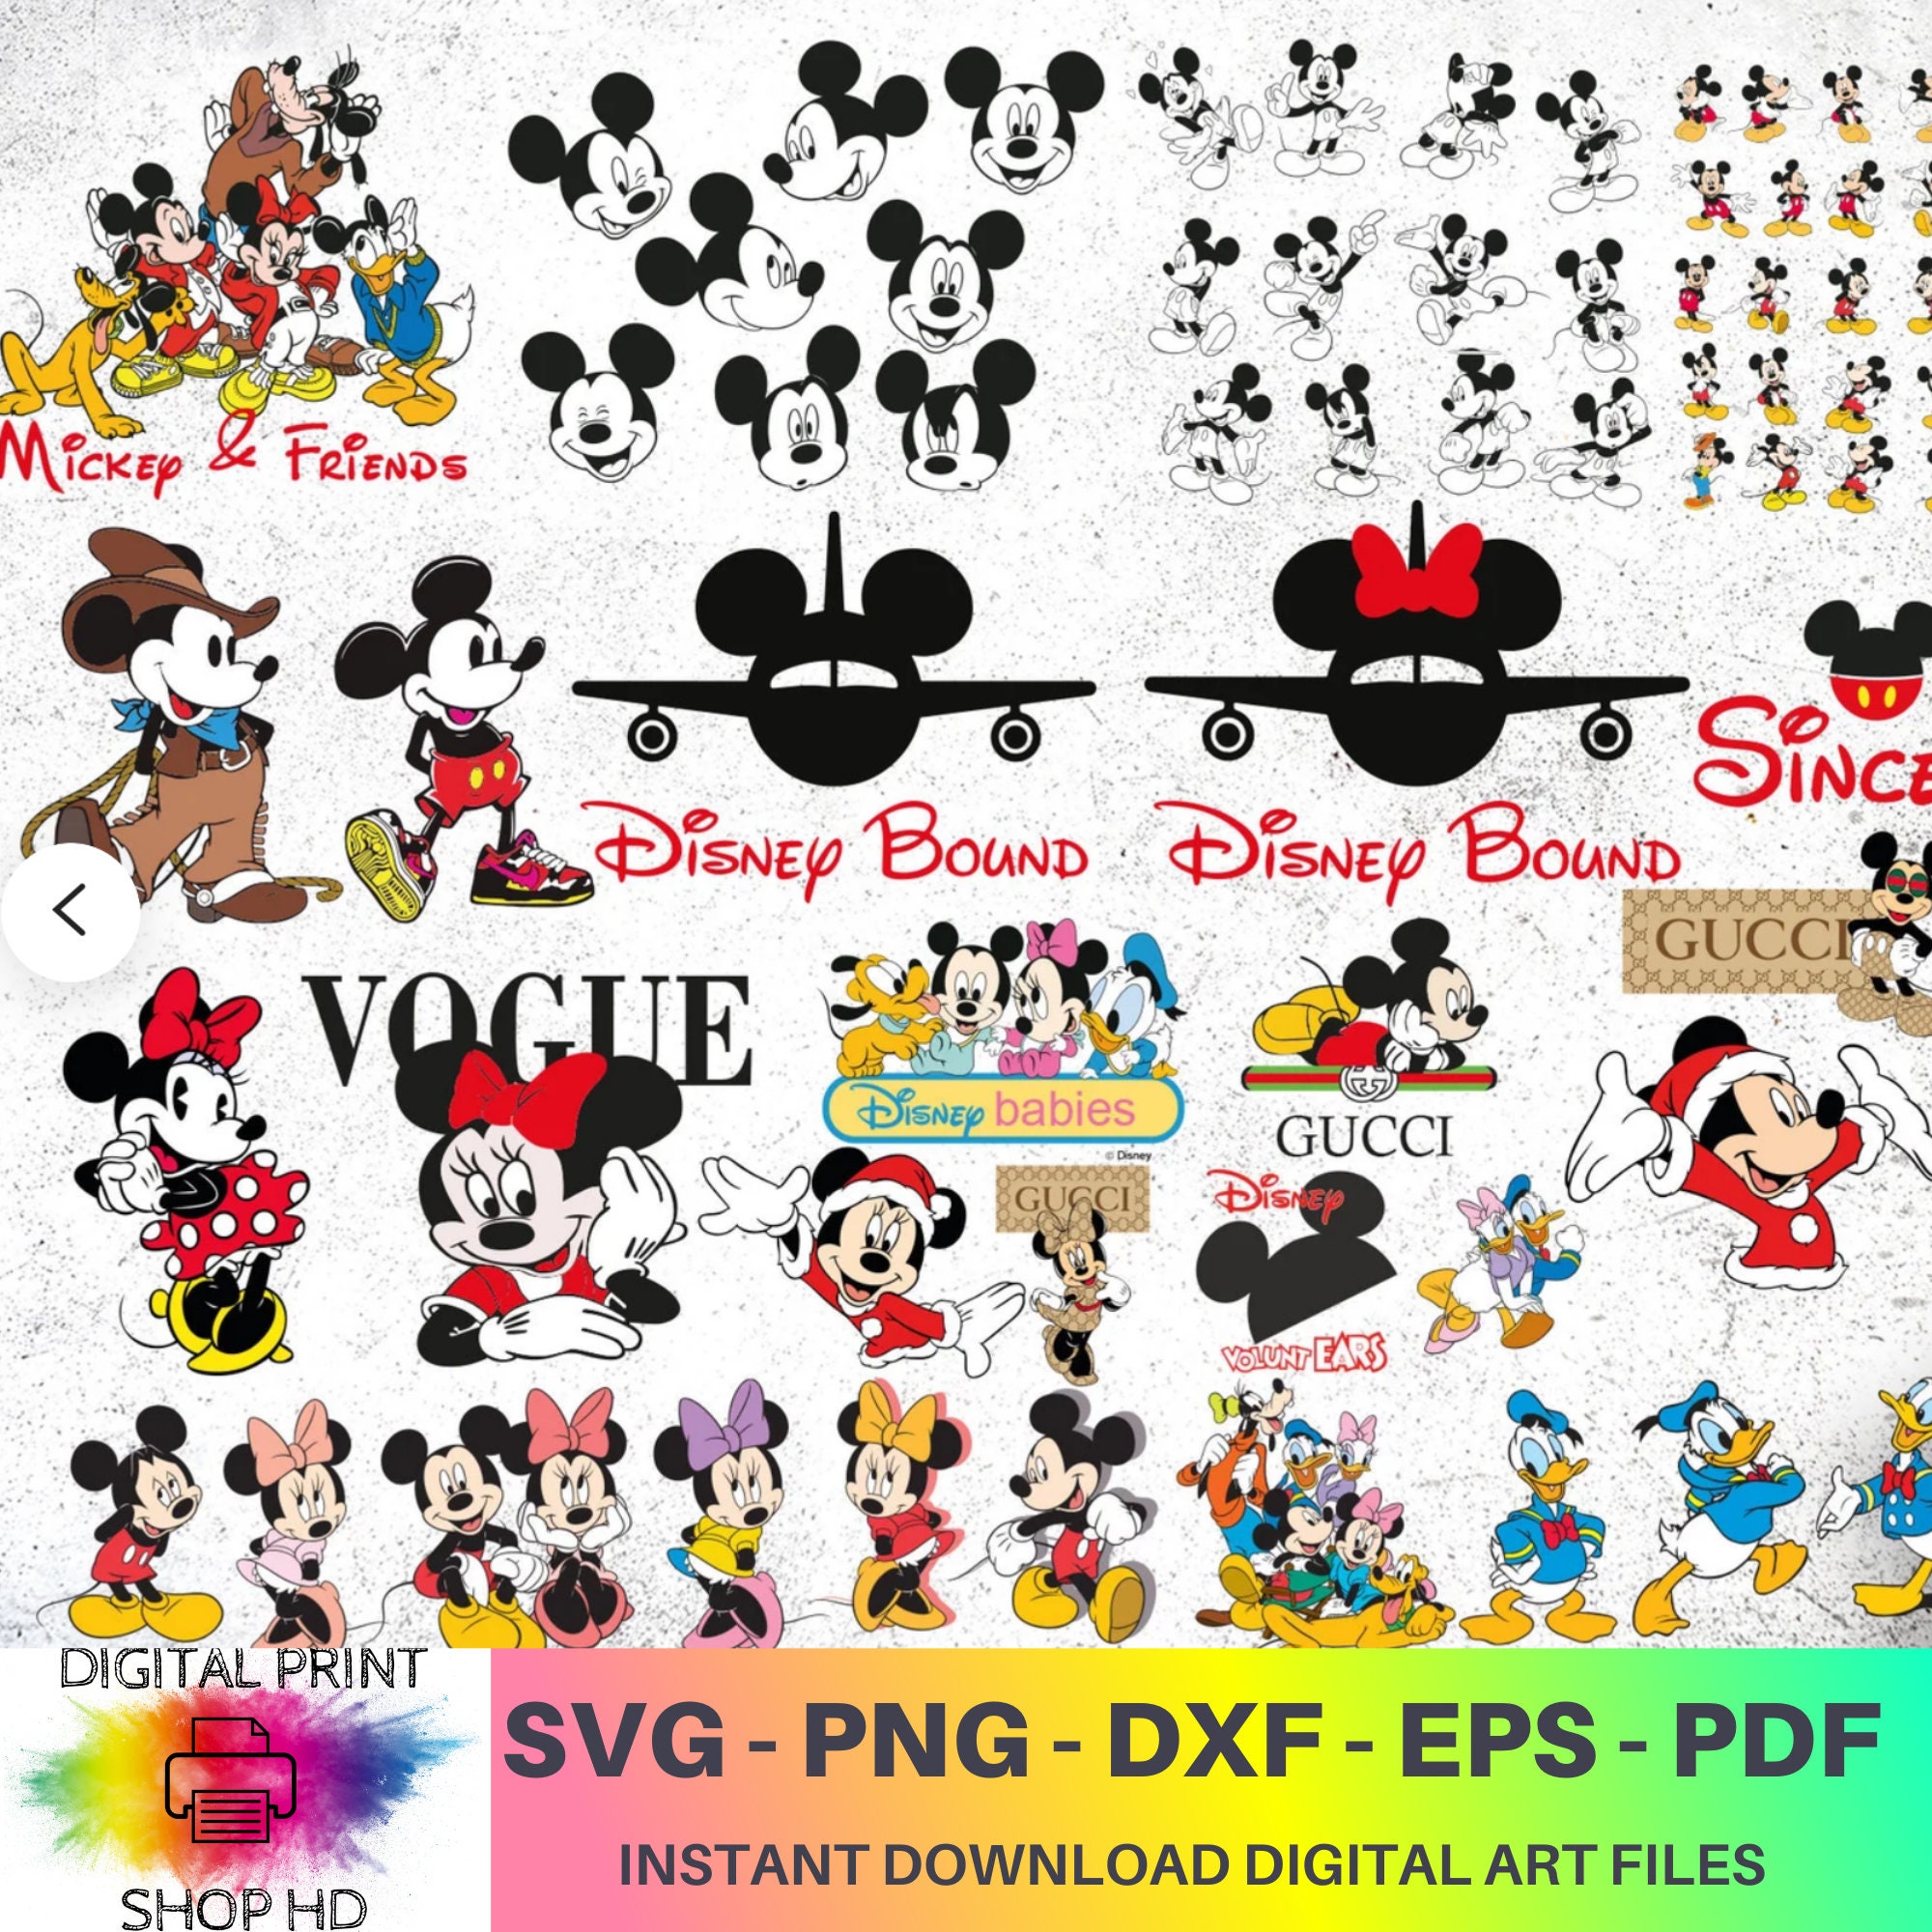 Minnie Mouse Designer Gucci Pattern SVG Sticker Cricut Cut File